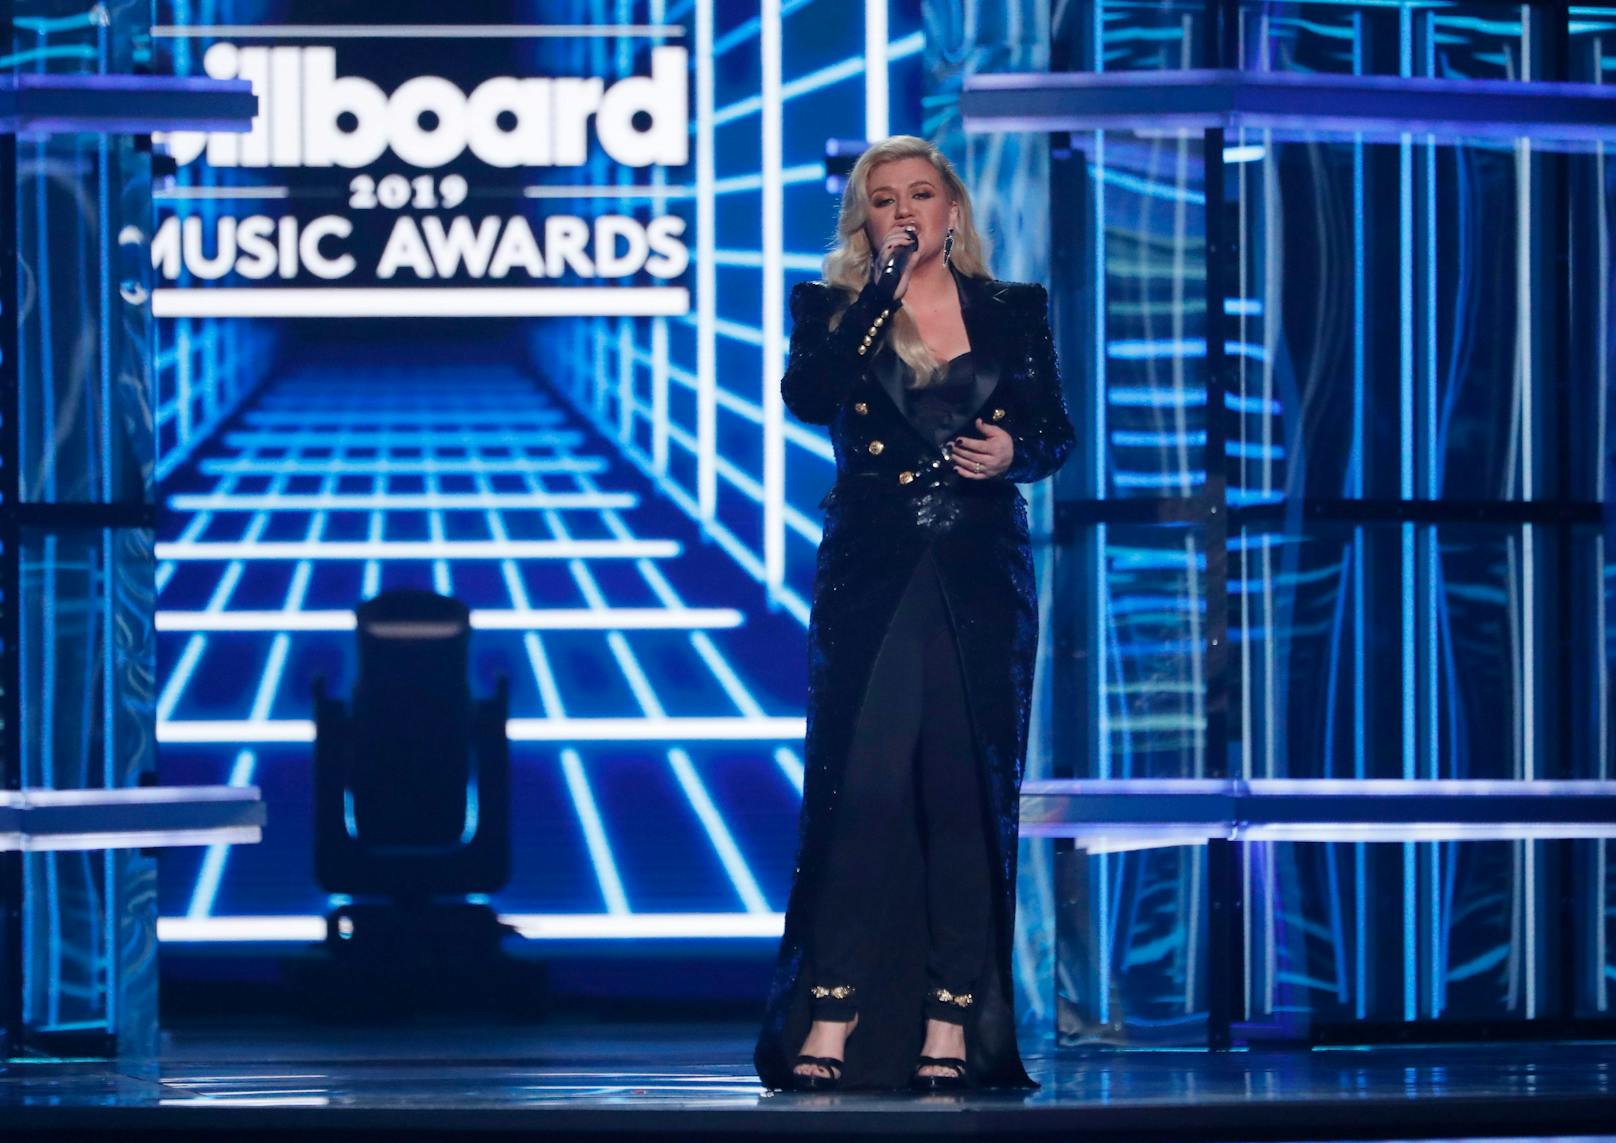 Aber auch sonst sieht man Kelly Clarkson im US-TV gerne mal als Moderatorin durch diverse Shows führen. Bei den "Billboard Music Awards" setzte man sogar mehrere Jahre in Folge auf sie als Gastgeberin.